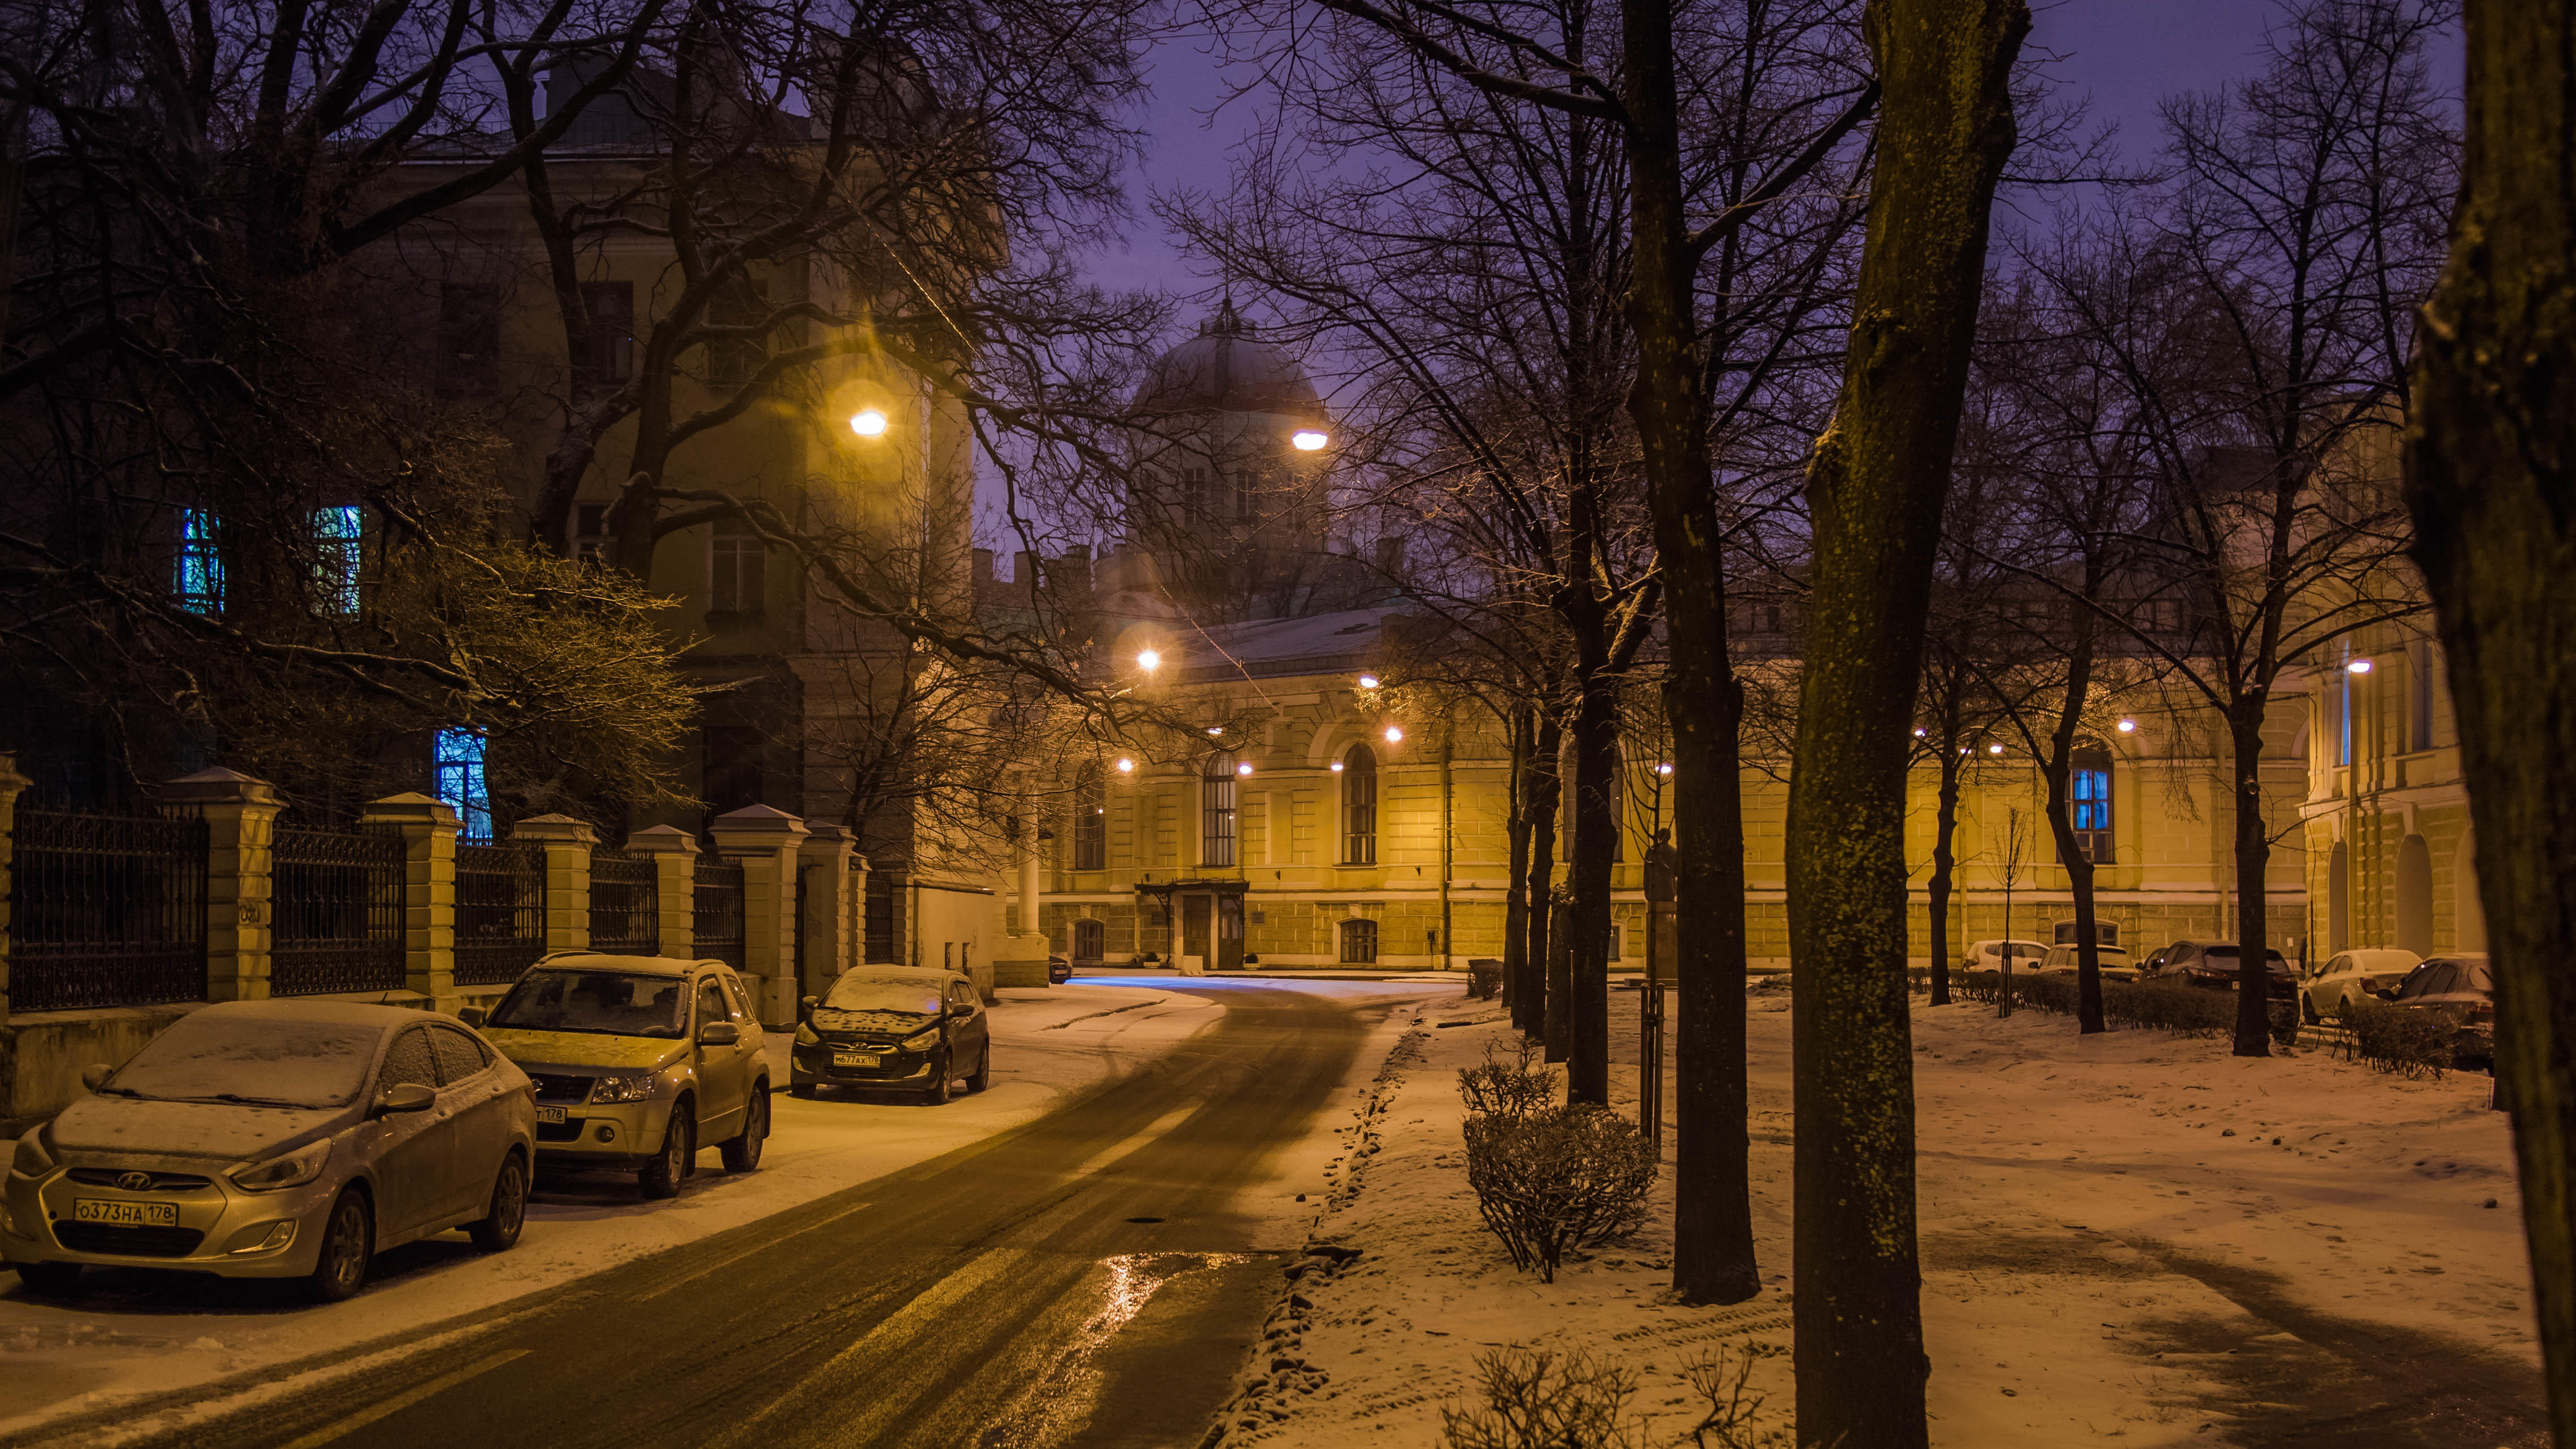 Обои на стол на улице. Тифлисская улица Санкт-Петербург. Тифлисская улица Петербург. Зимняя улица. Зимний город.